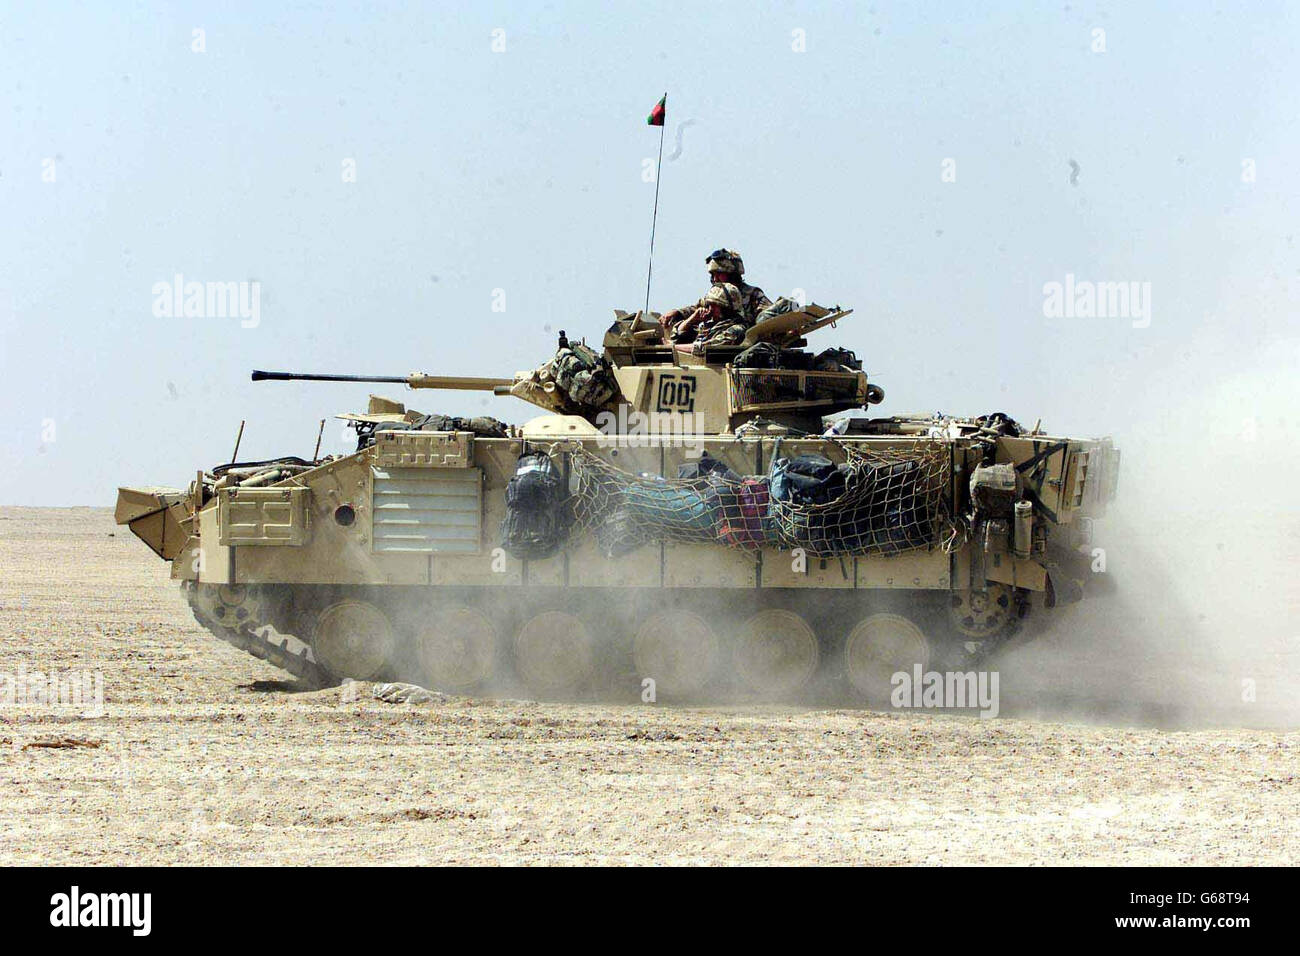 Royal Fusiliers en el desierto de Kuwait. Imagen disponible 27/03/03 de los miembros del Real Regimiento de Fusiliers en el Desierto de Kuwait. Foto de stock